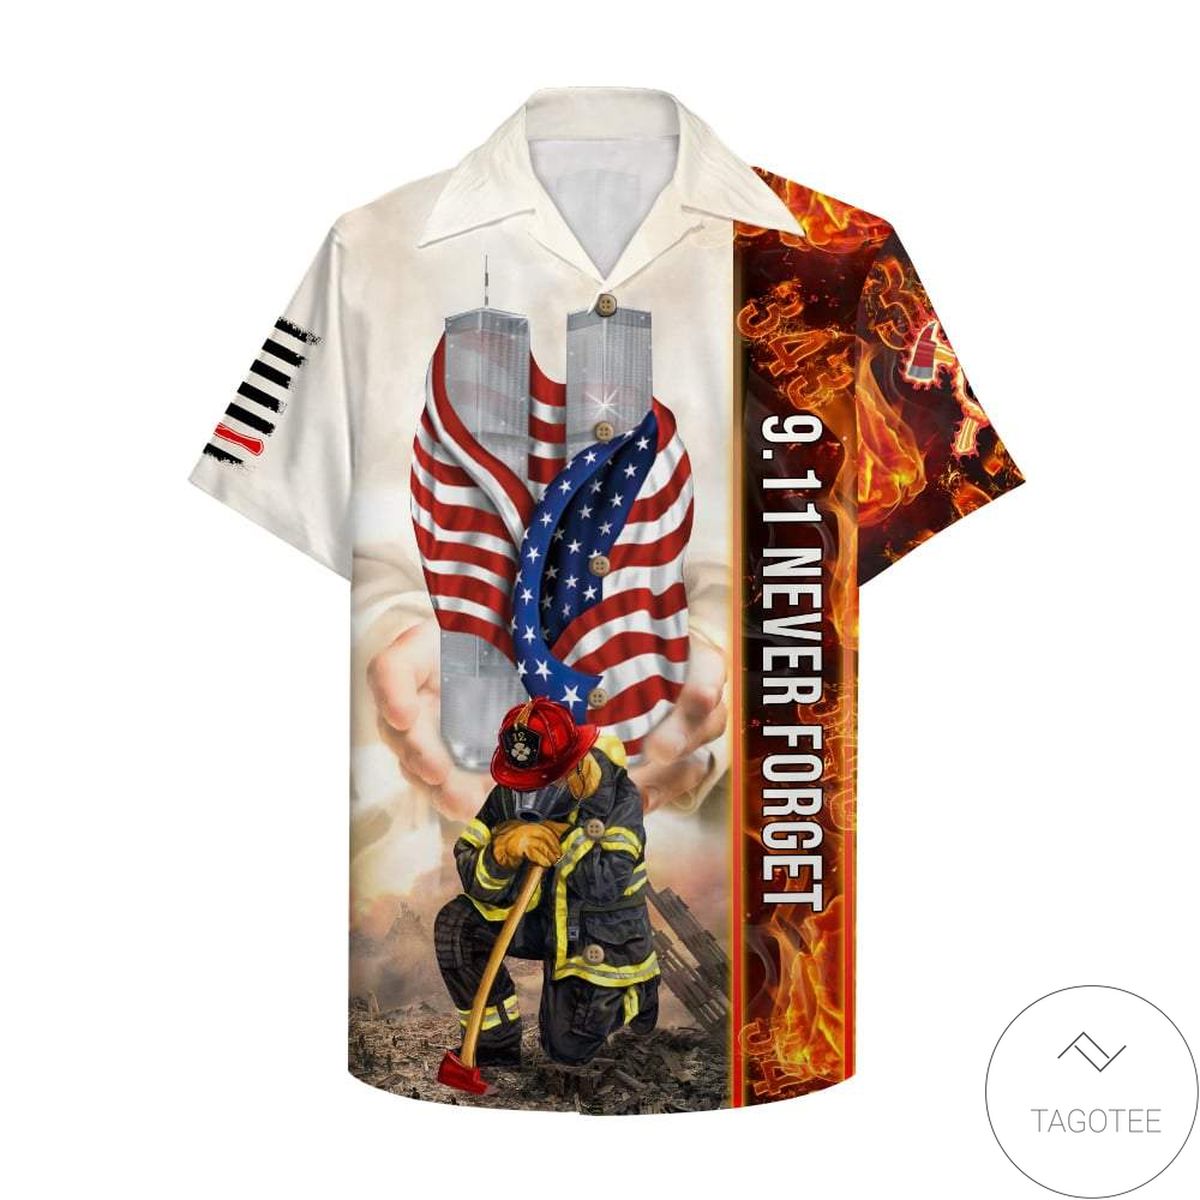 Firefighter 9.11 Never Forget - Hawaiian Shirt